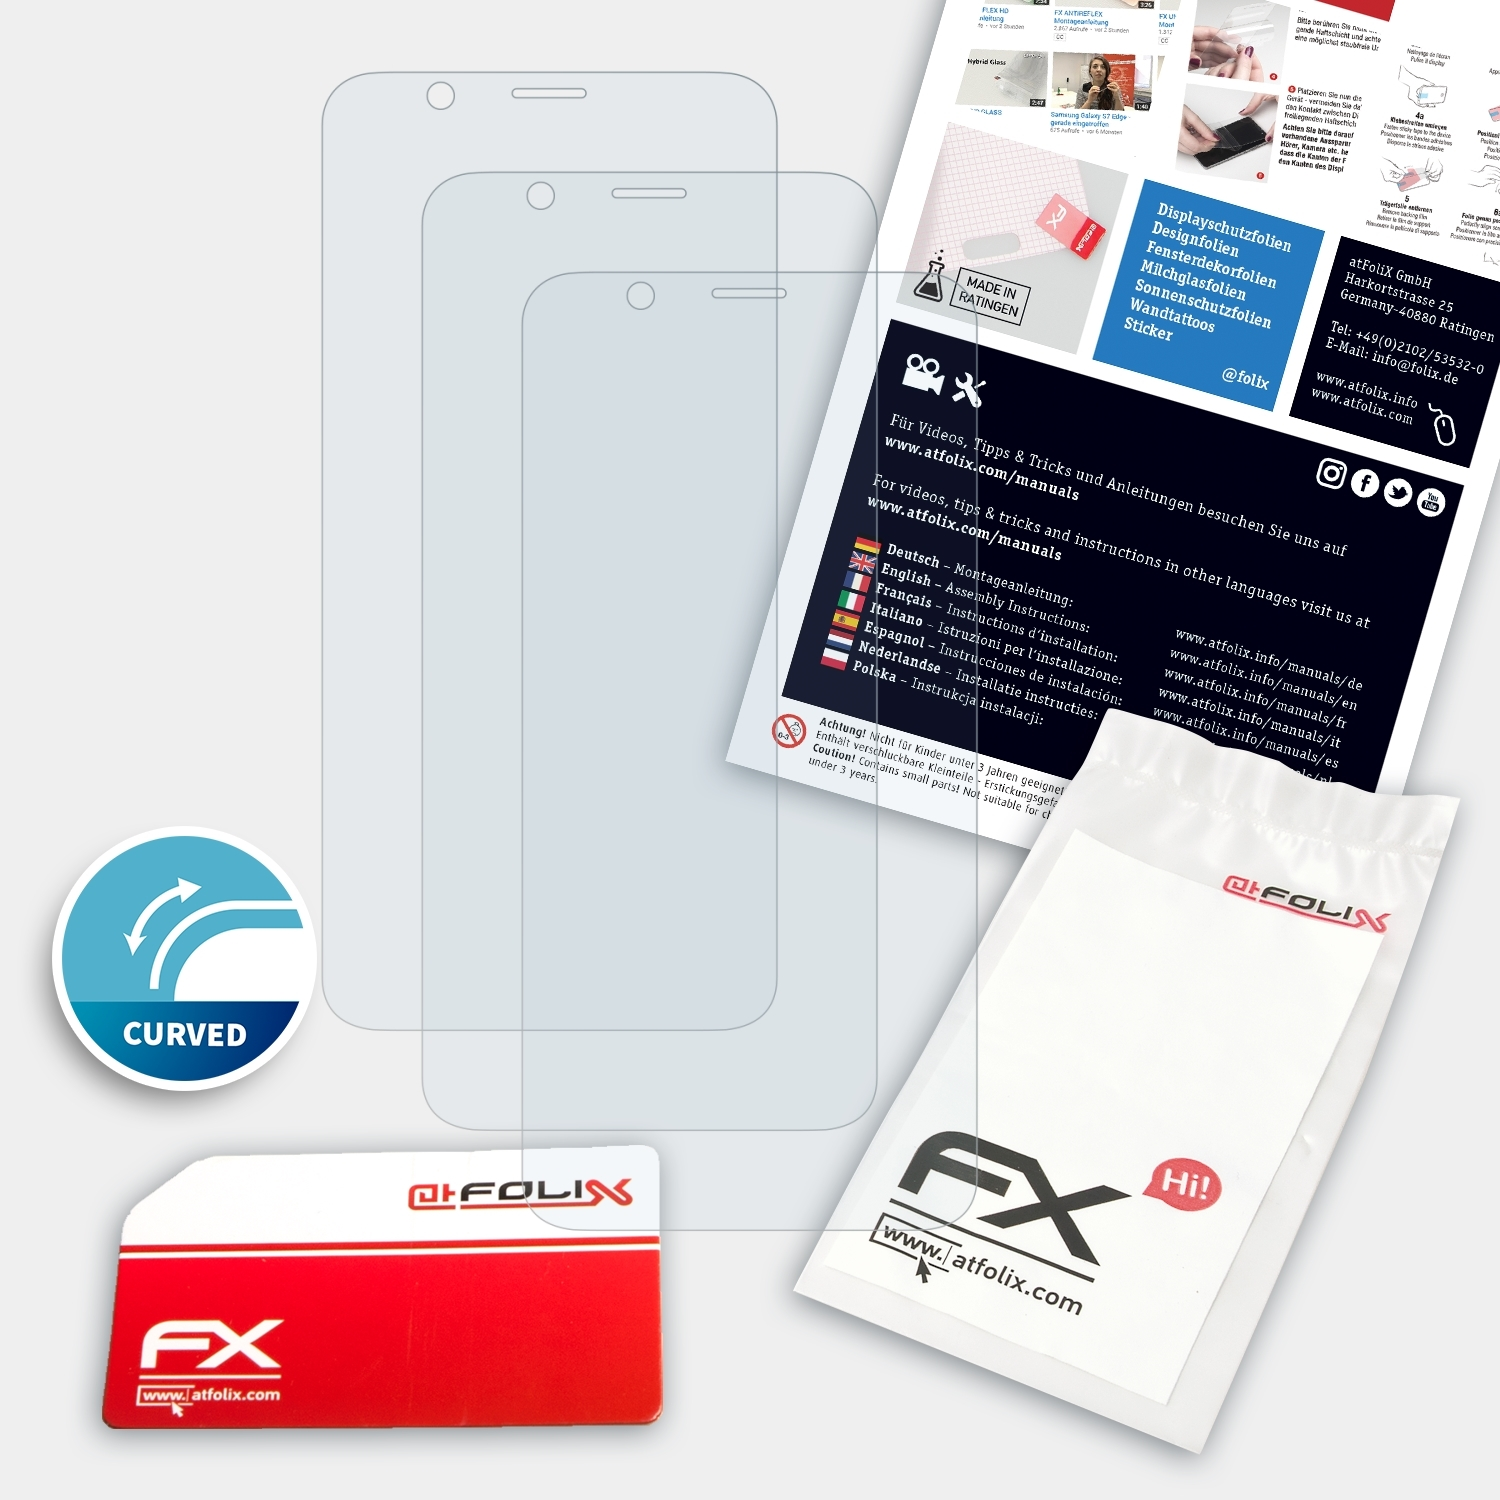 R11s Displayschutz(für ATFOLIX Oppo Plus) FX-ActiFleX 3x